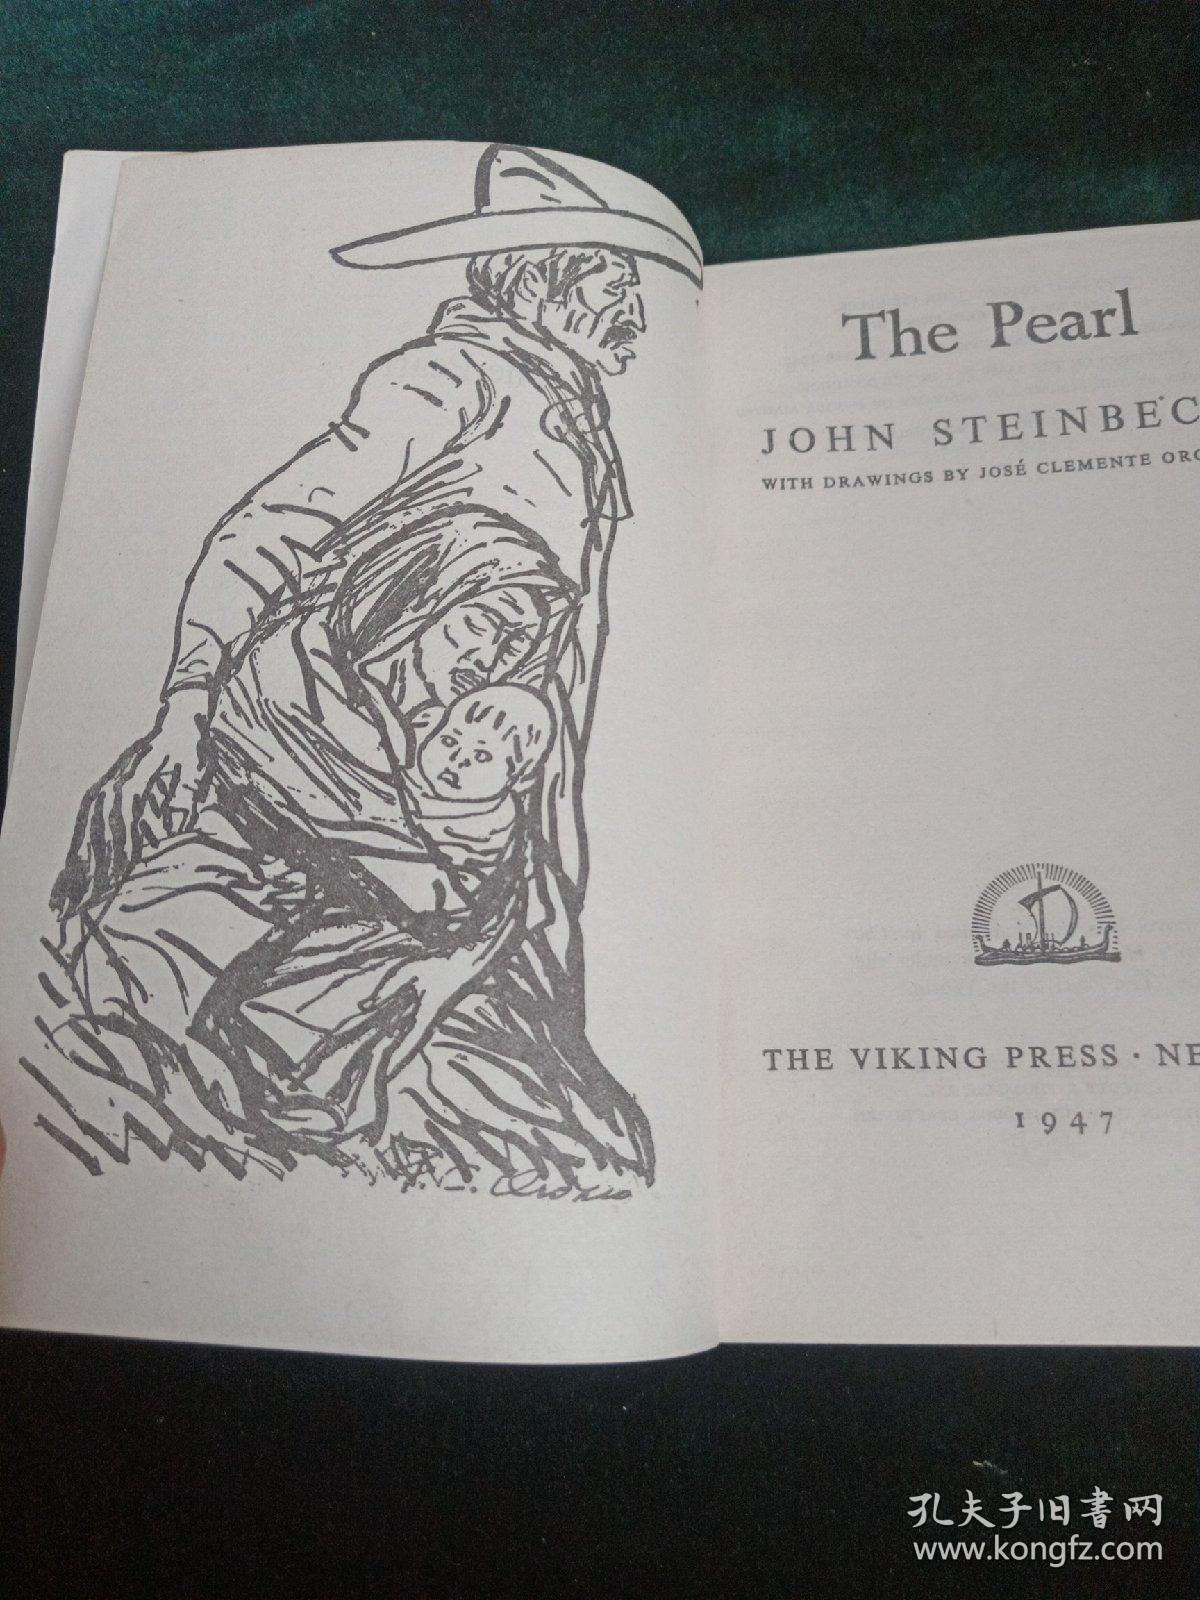 The  Pearl
JOHN STEINBECK